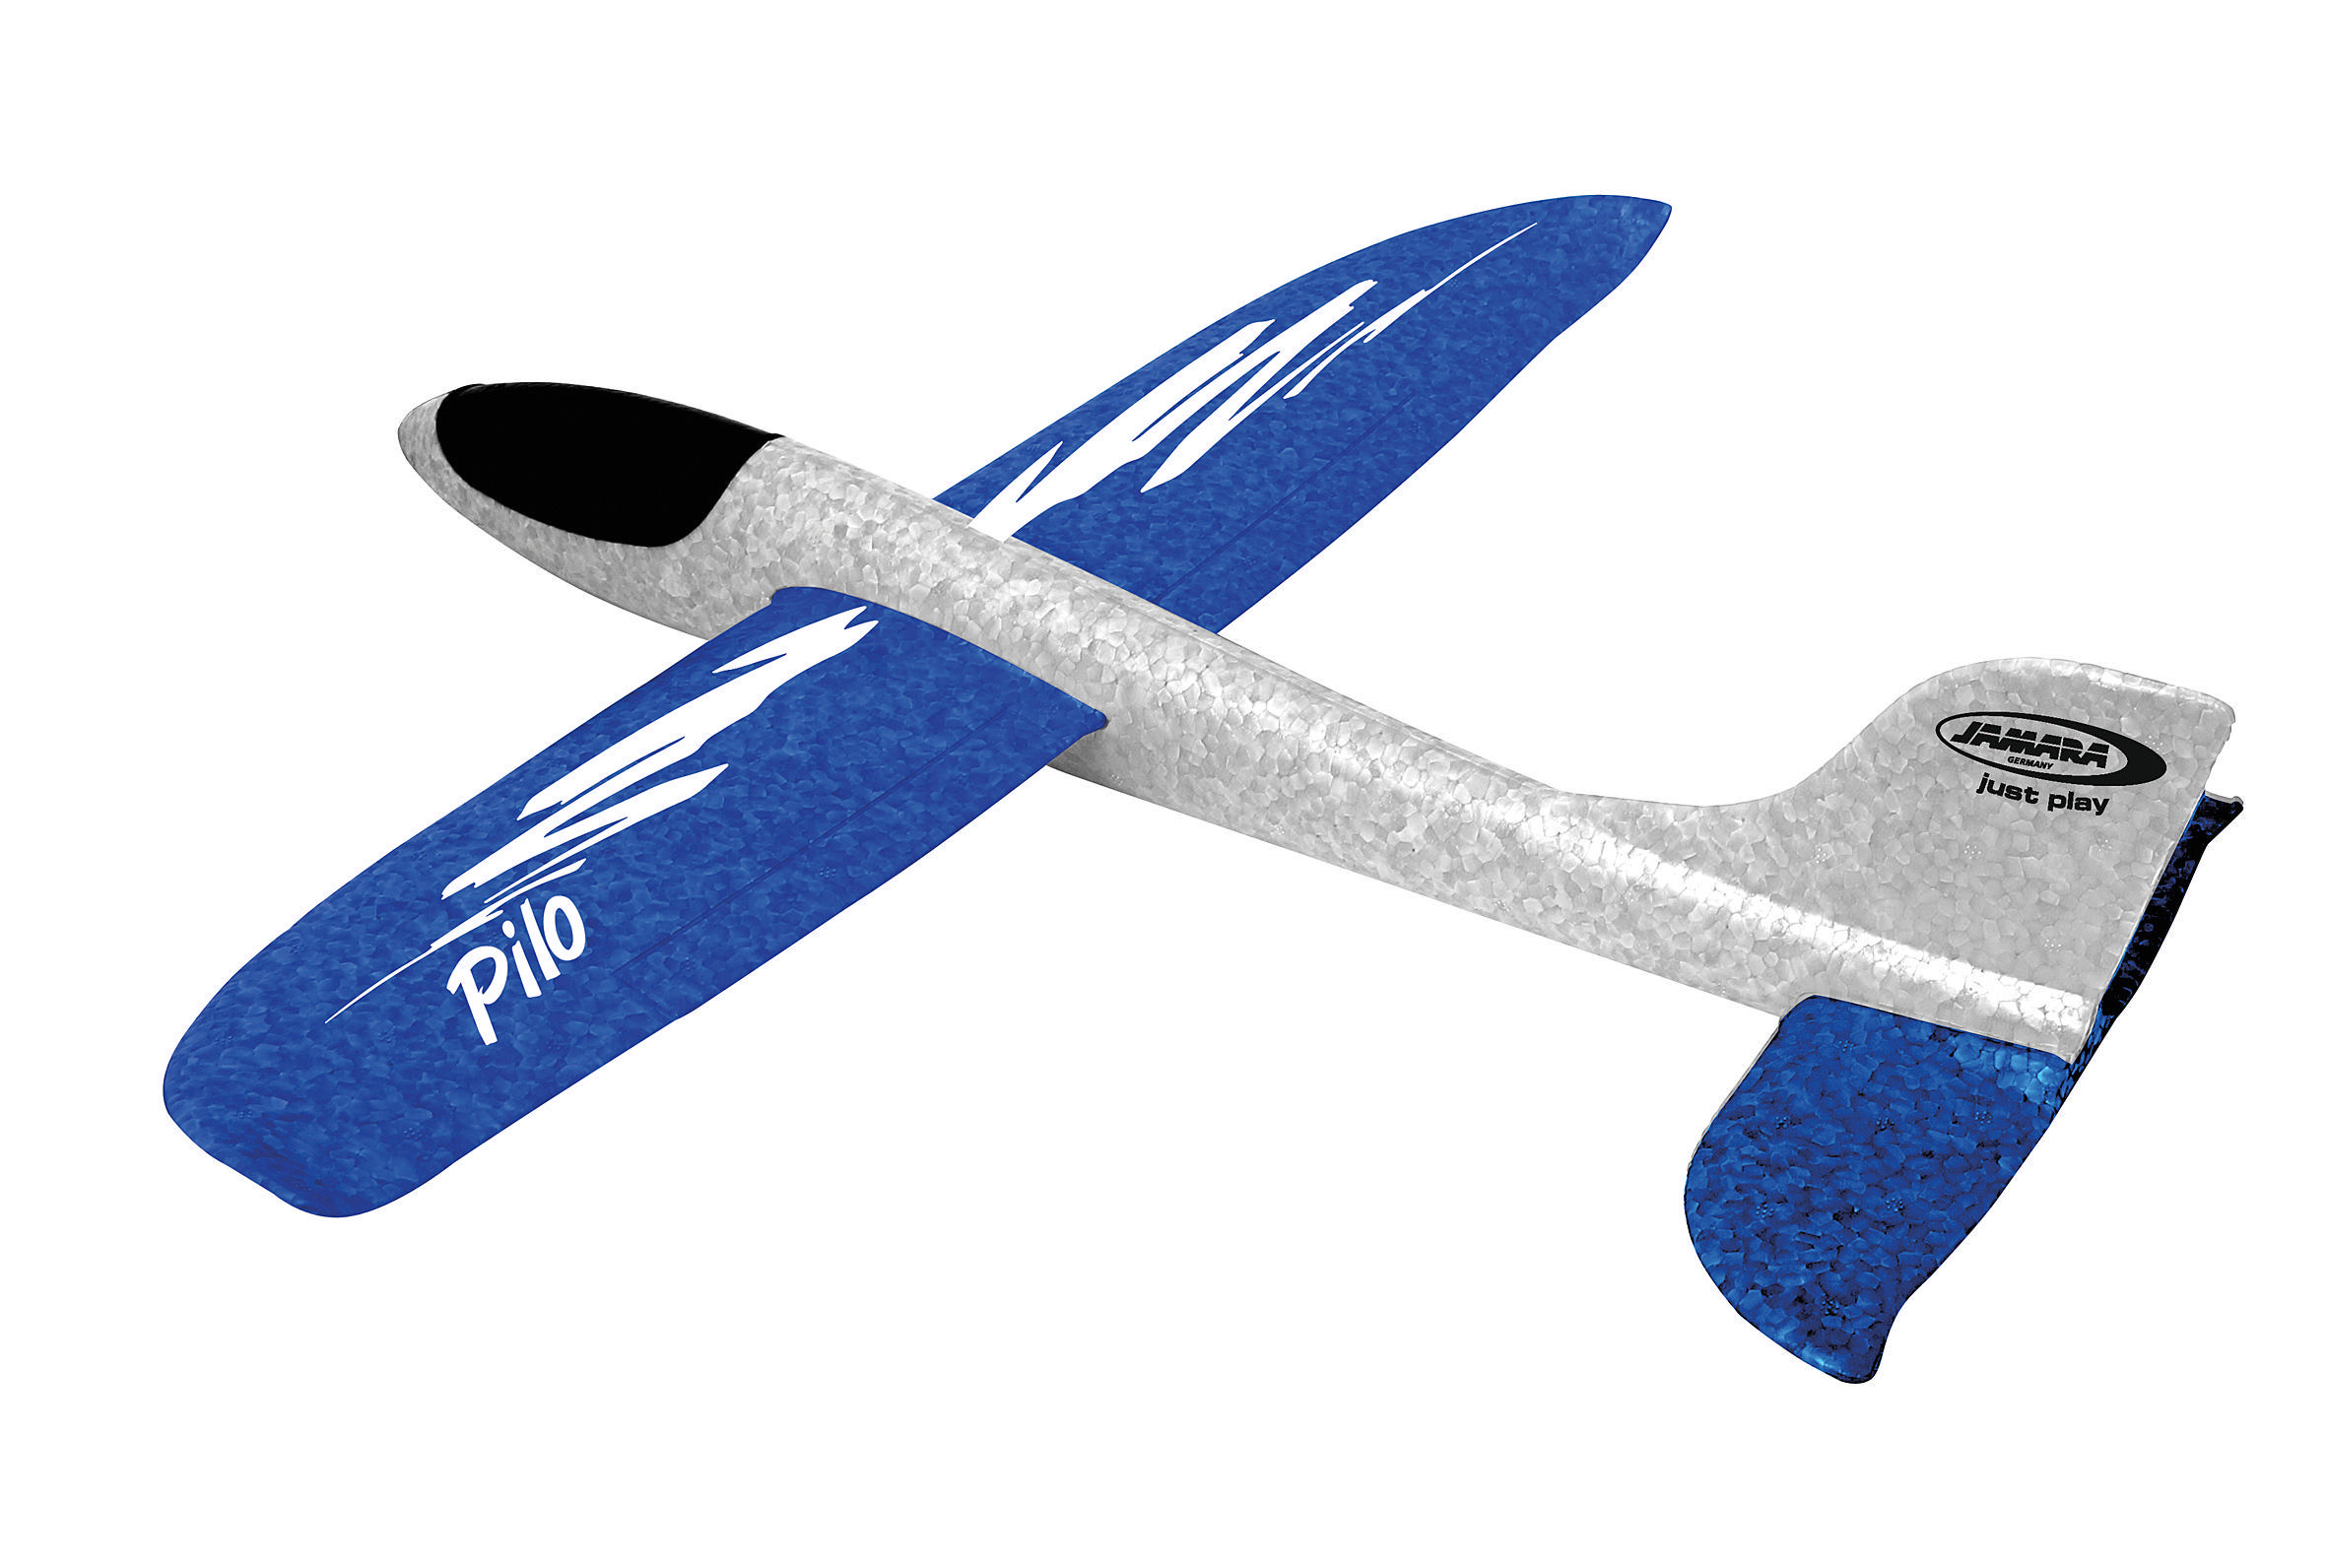 JAMARA KIDS Pilo Schaumwurfgleiter Spielzeugflugzeug Weiß/Blau